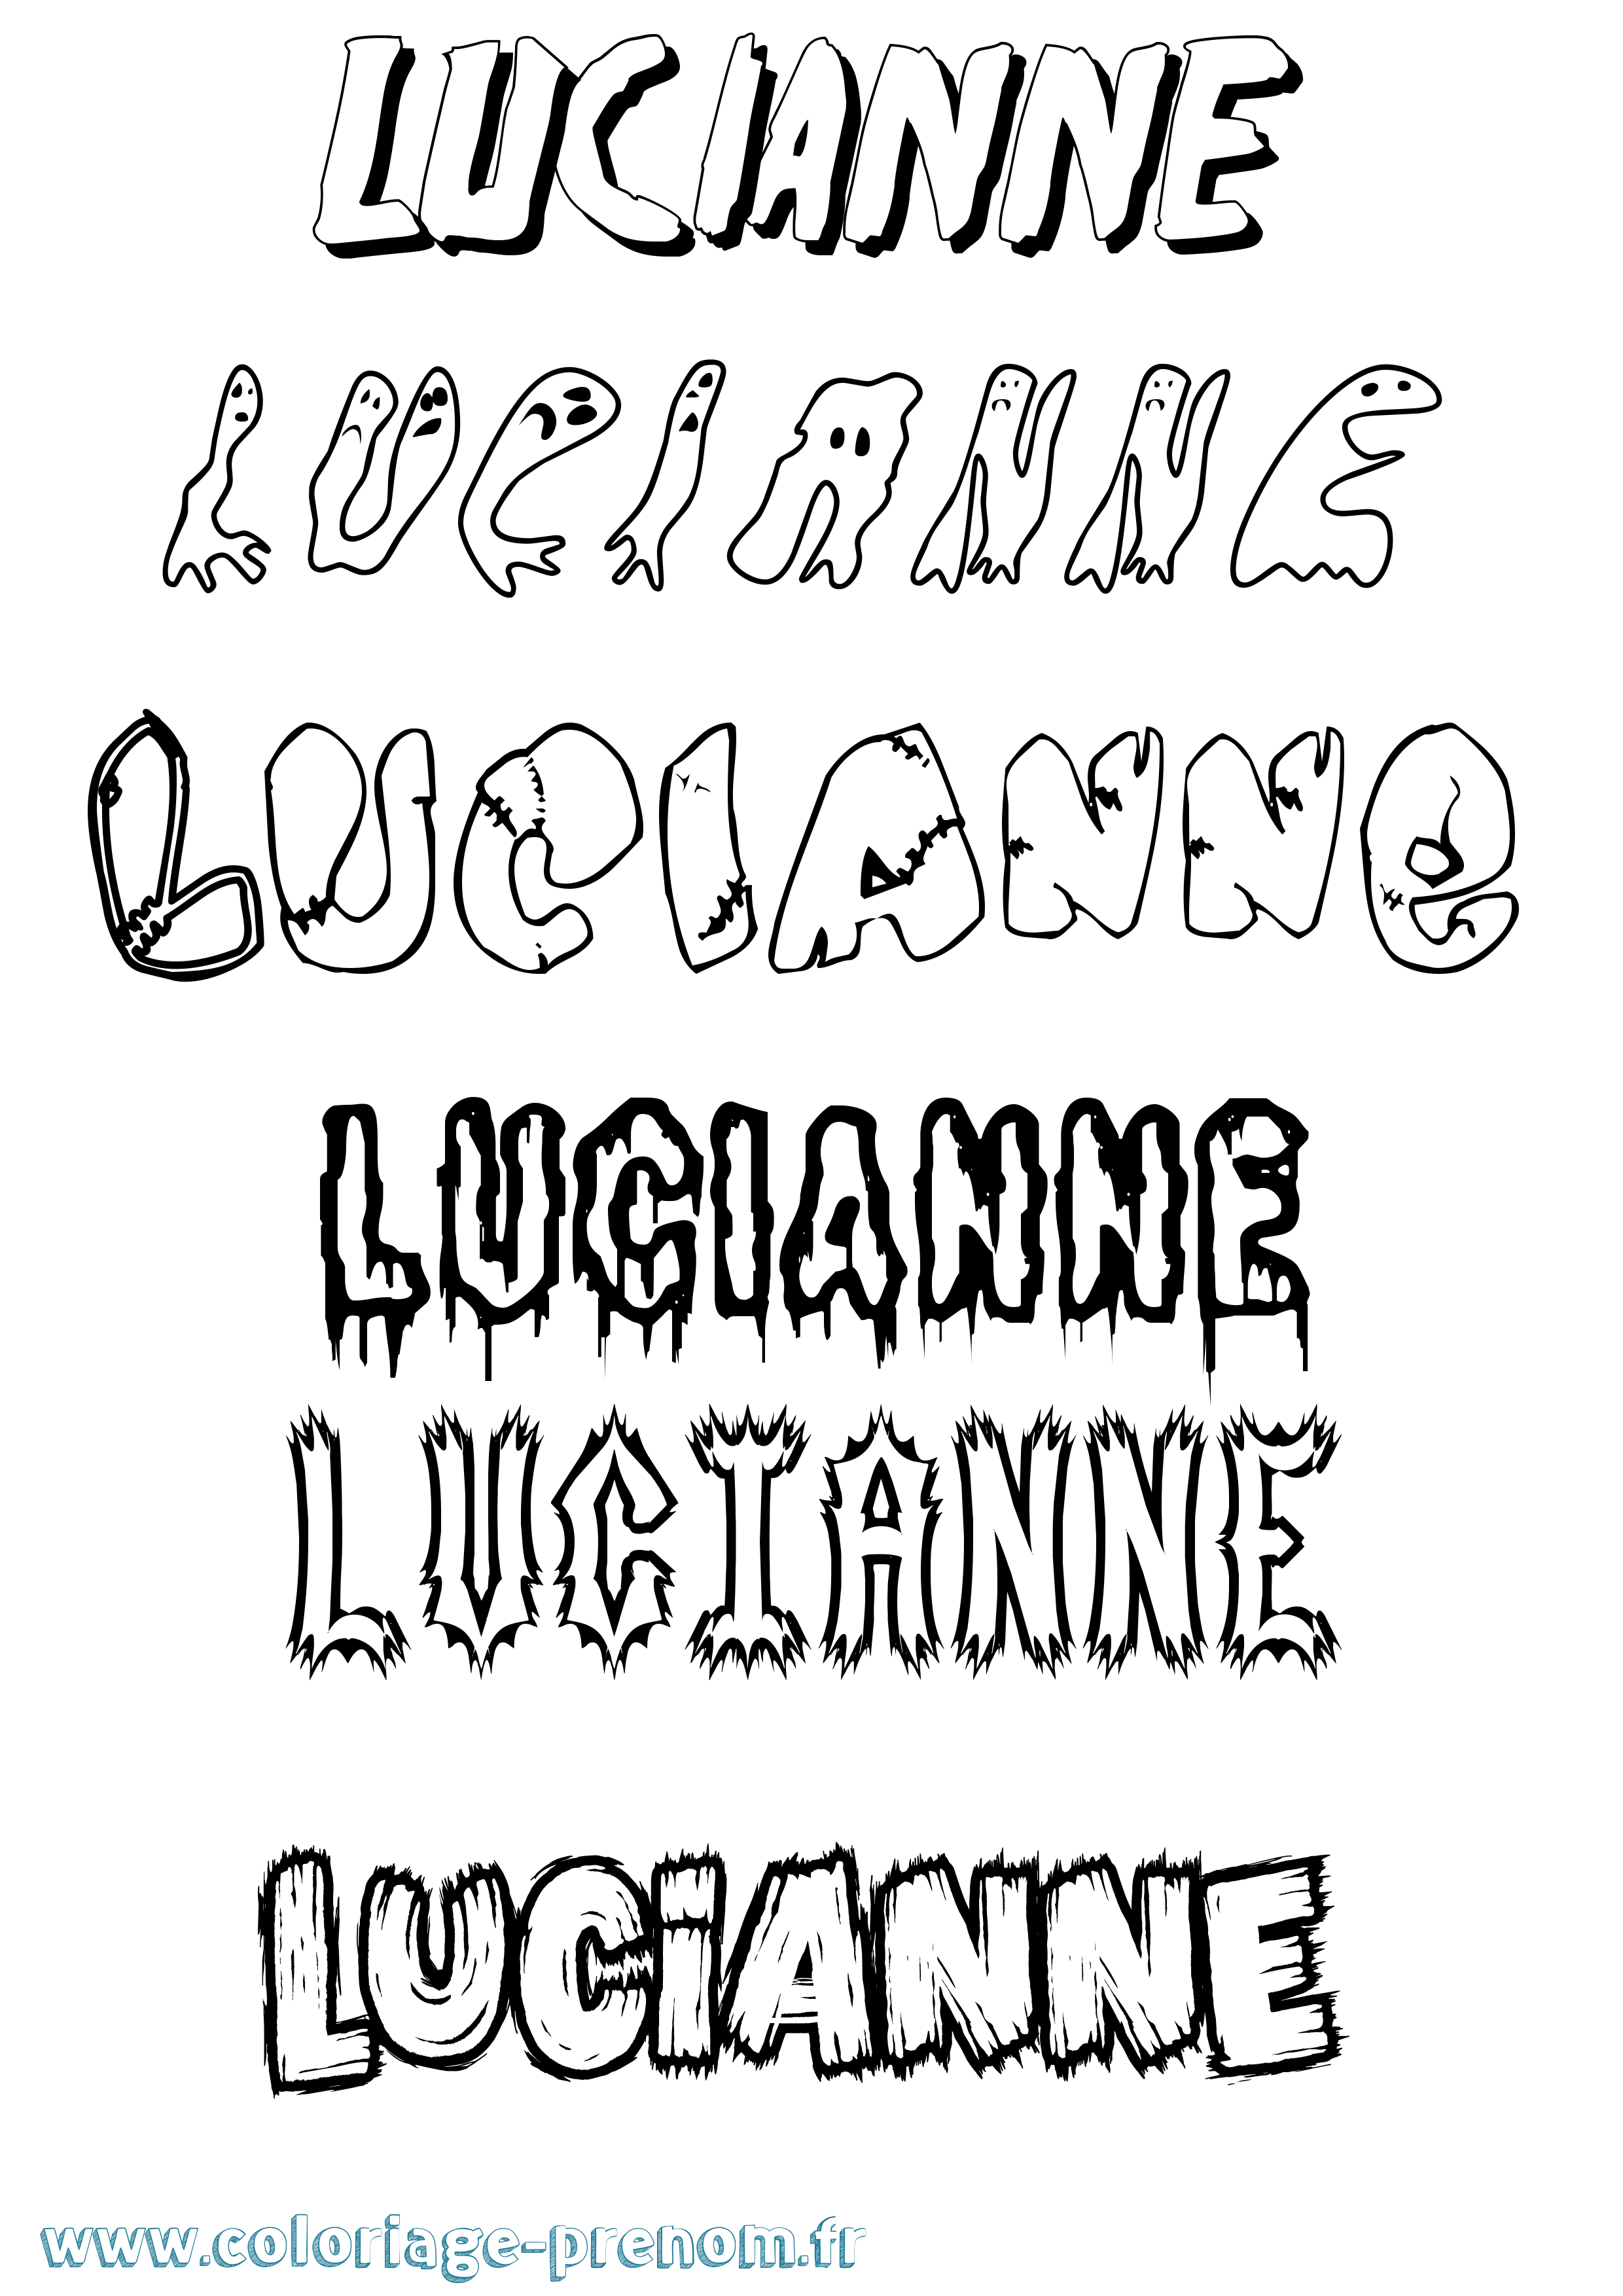 Coloriage prénom Lucianne Frisson